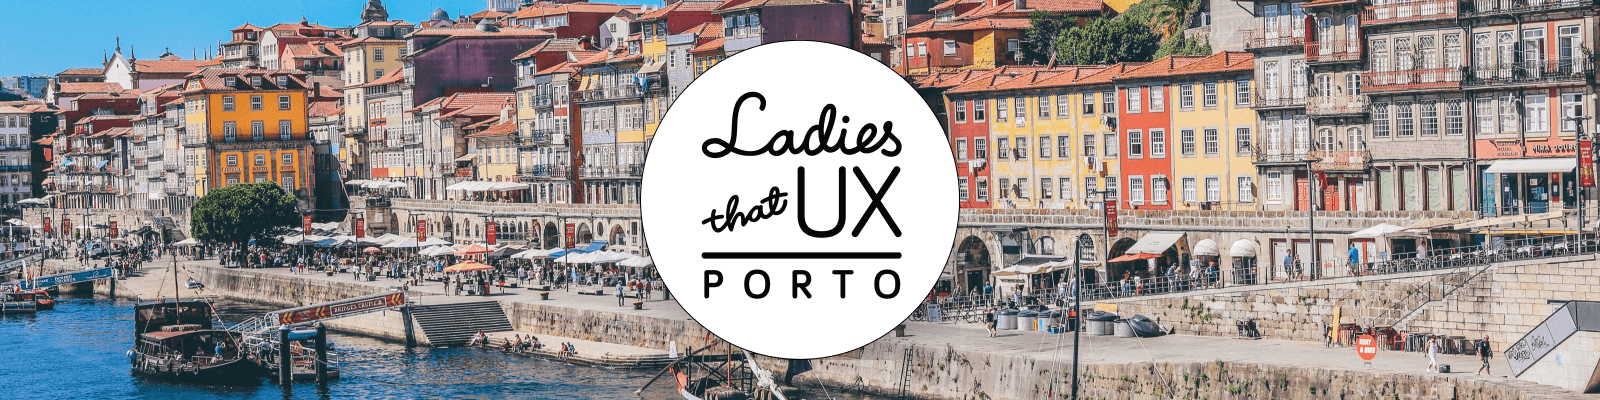 Imagem com o fundo de uma paisagem da Ribeira, ponto turístico muito famoso no Porto. Por cima da imagem da paisagem tem a logo da comunidade escrito: Ladies that UX Porto.